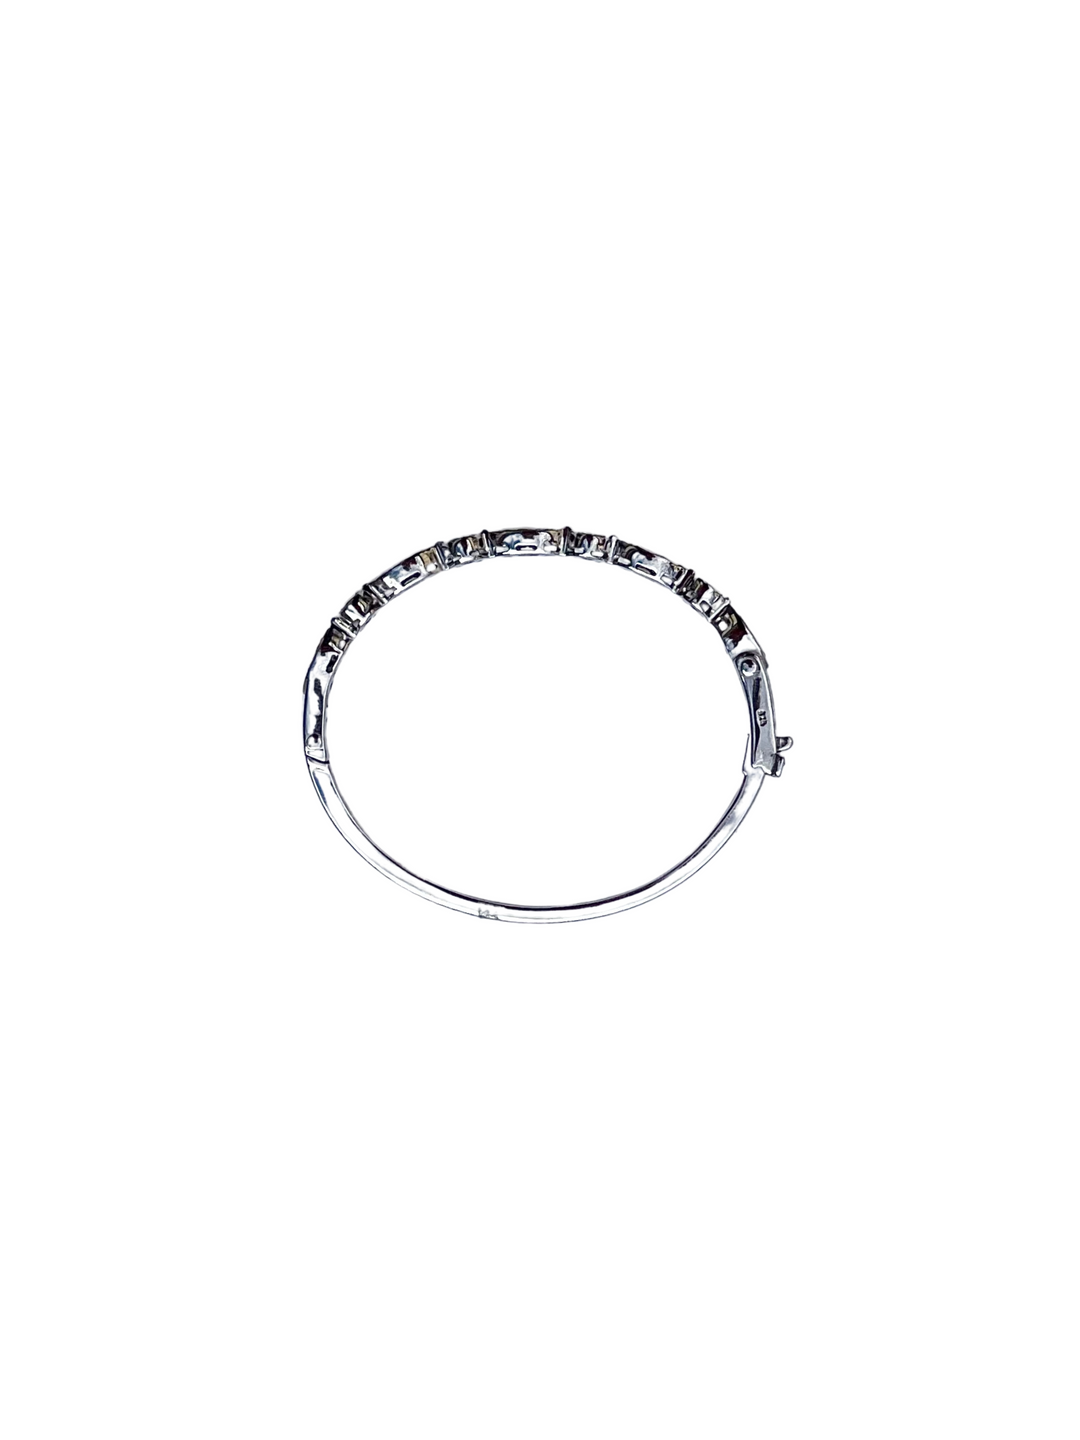 The Woods Fine Jewelry Diamond Bracelet